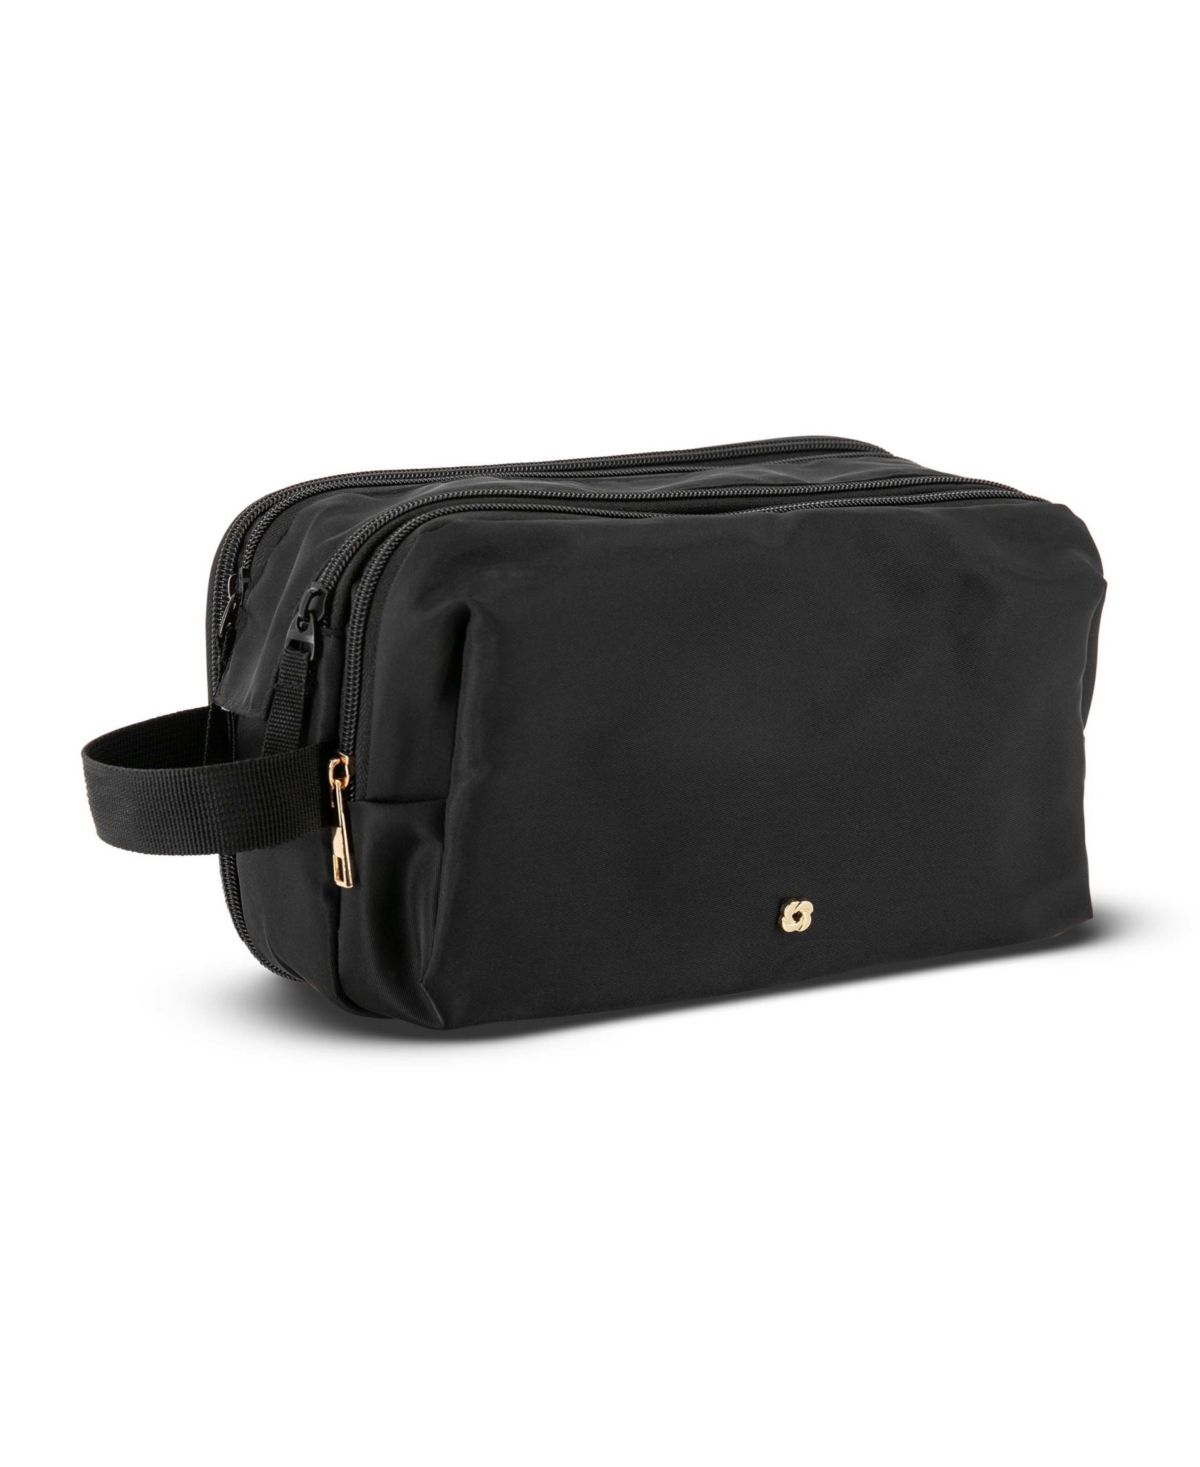 Samsonite Companion Top Zip Deluxe Travel Kit Bag In Black